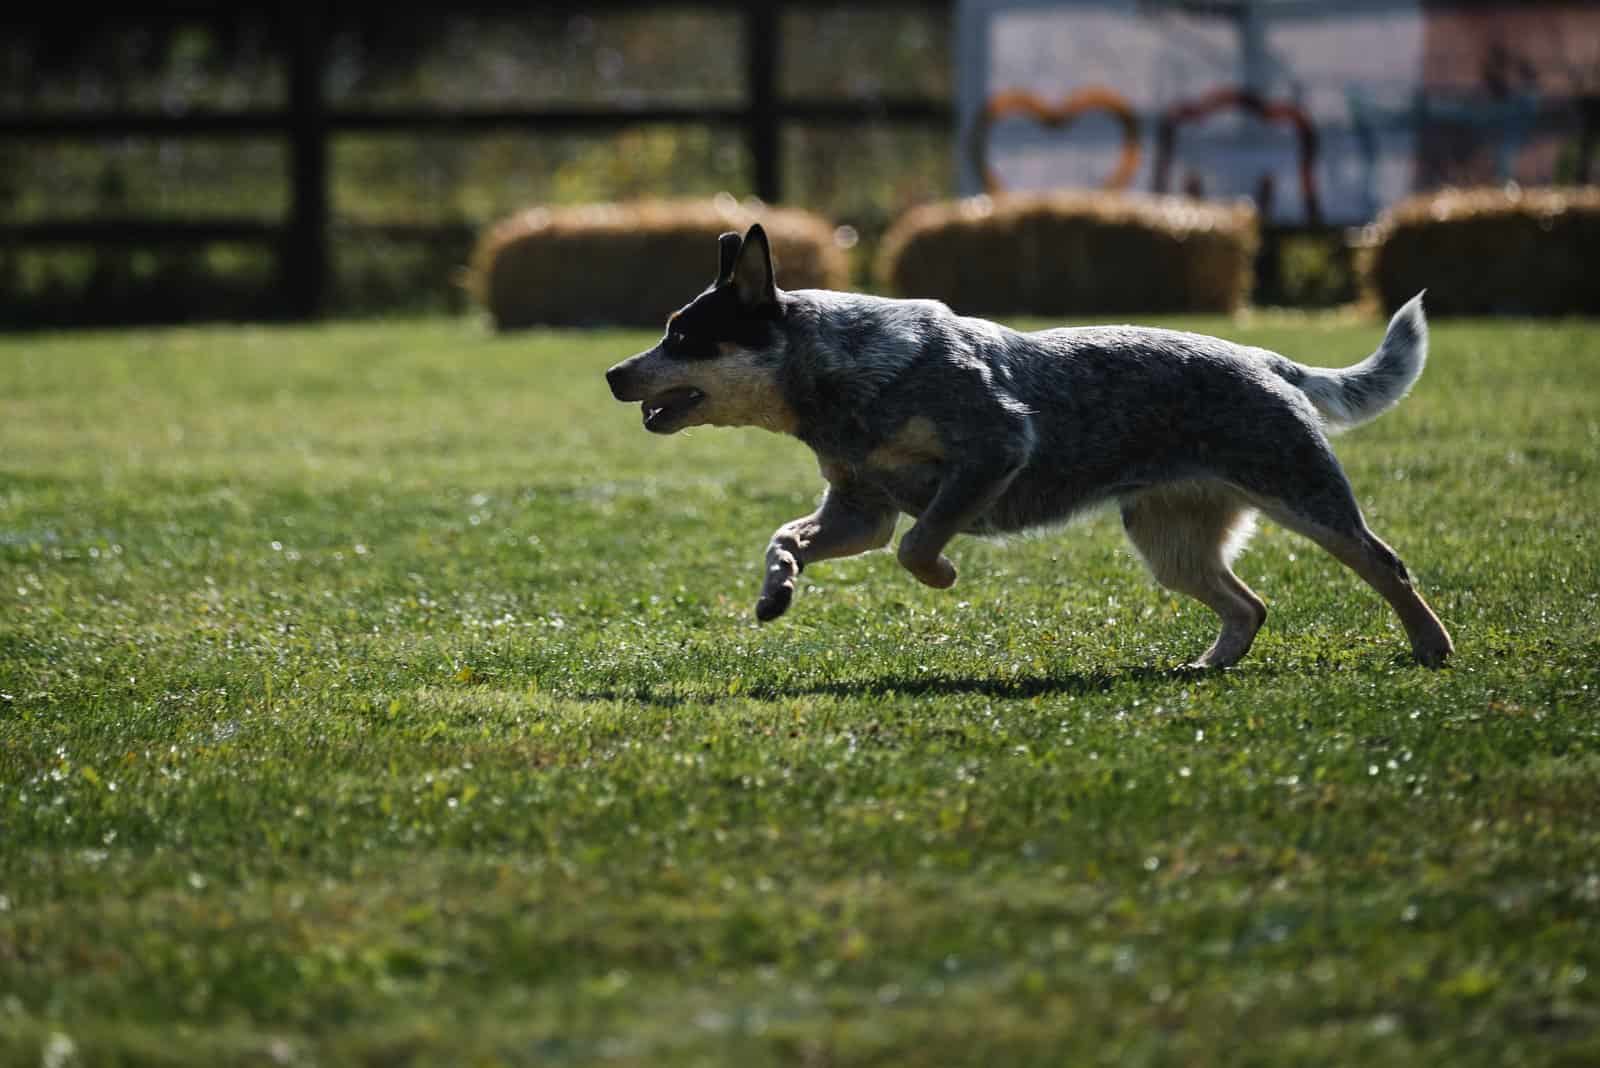 Australian Shepherd Blue Heeler running on grass